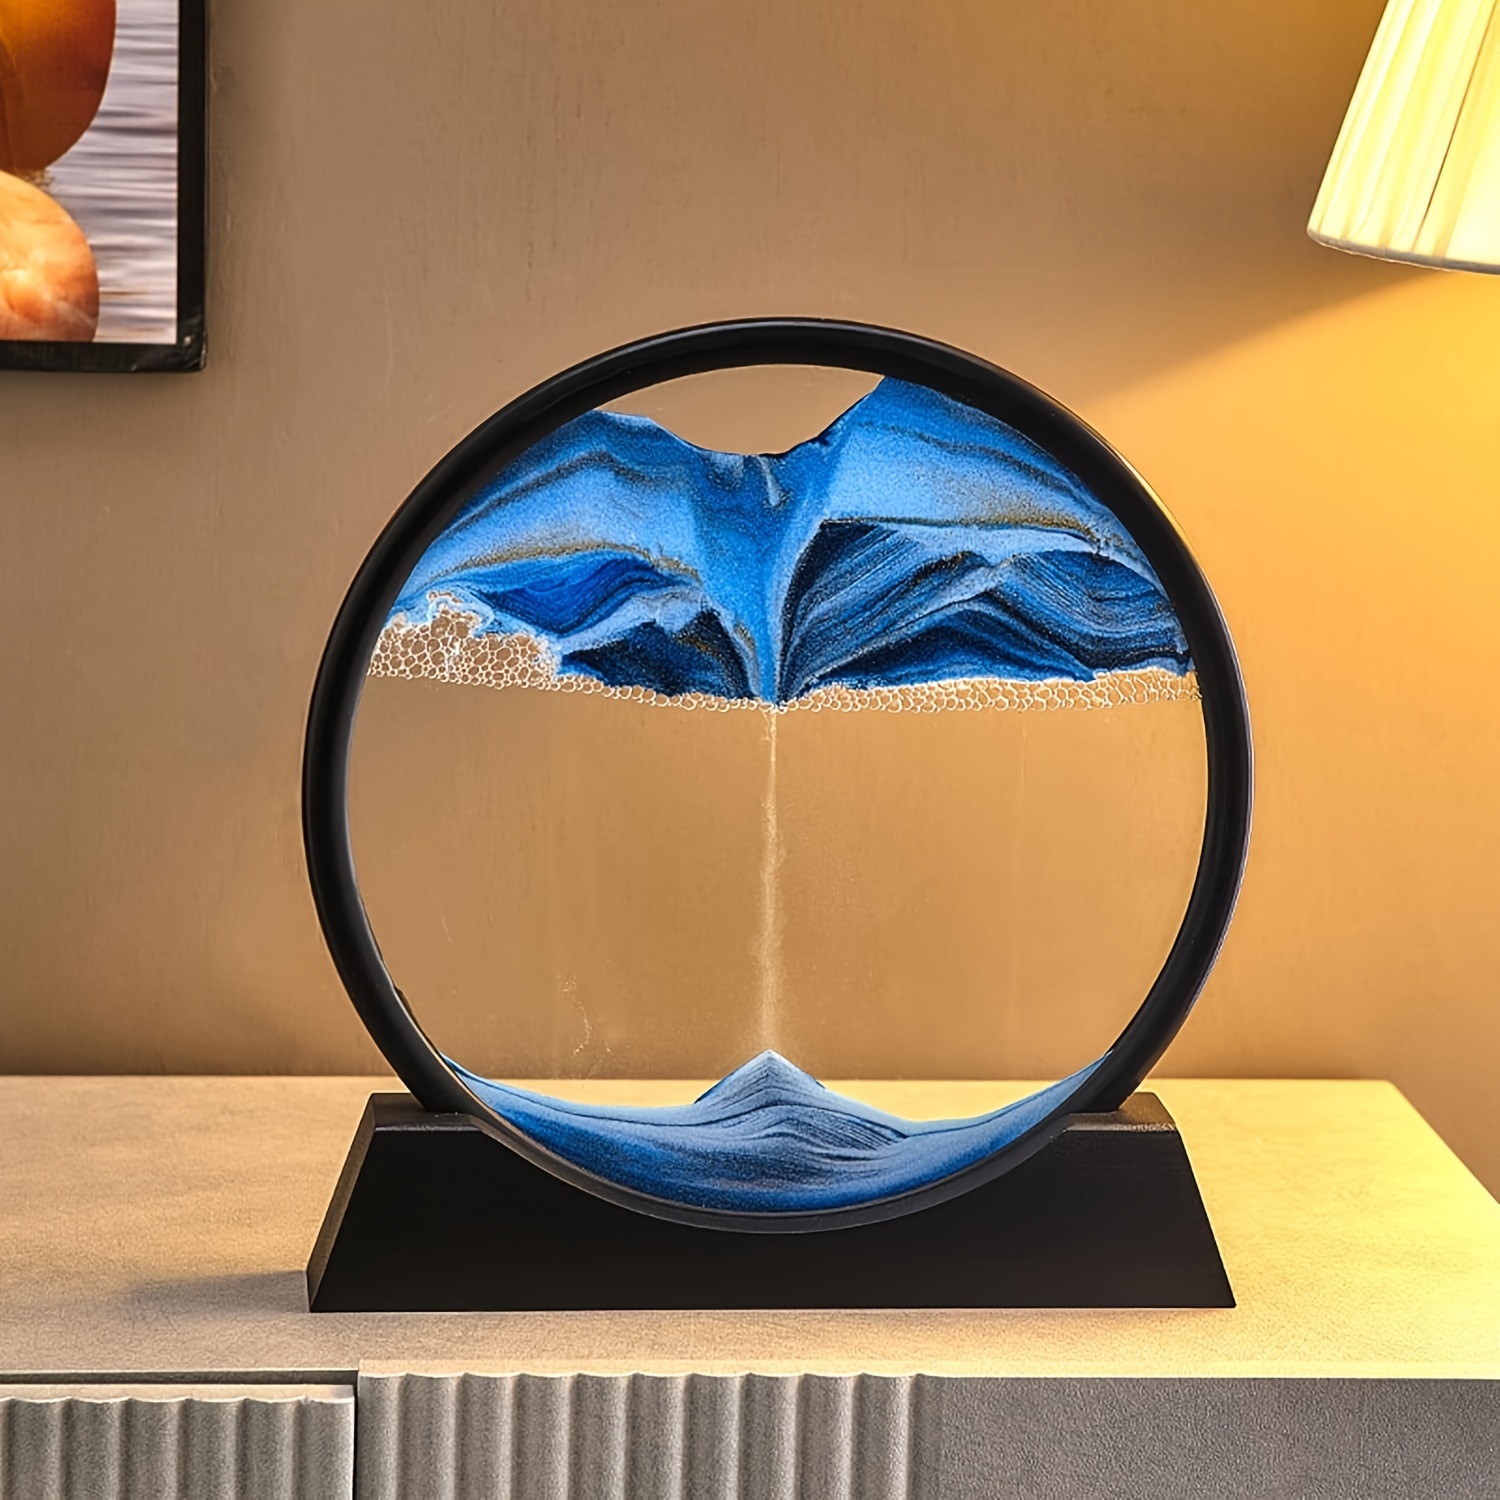 AOLIFLY Image d'art de sable mobile, peinture d'art de sable dynamique 3D,  paysage d'art de sable rond en verre, mouvement fluide pour la maison